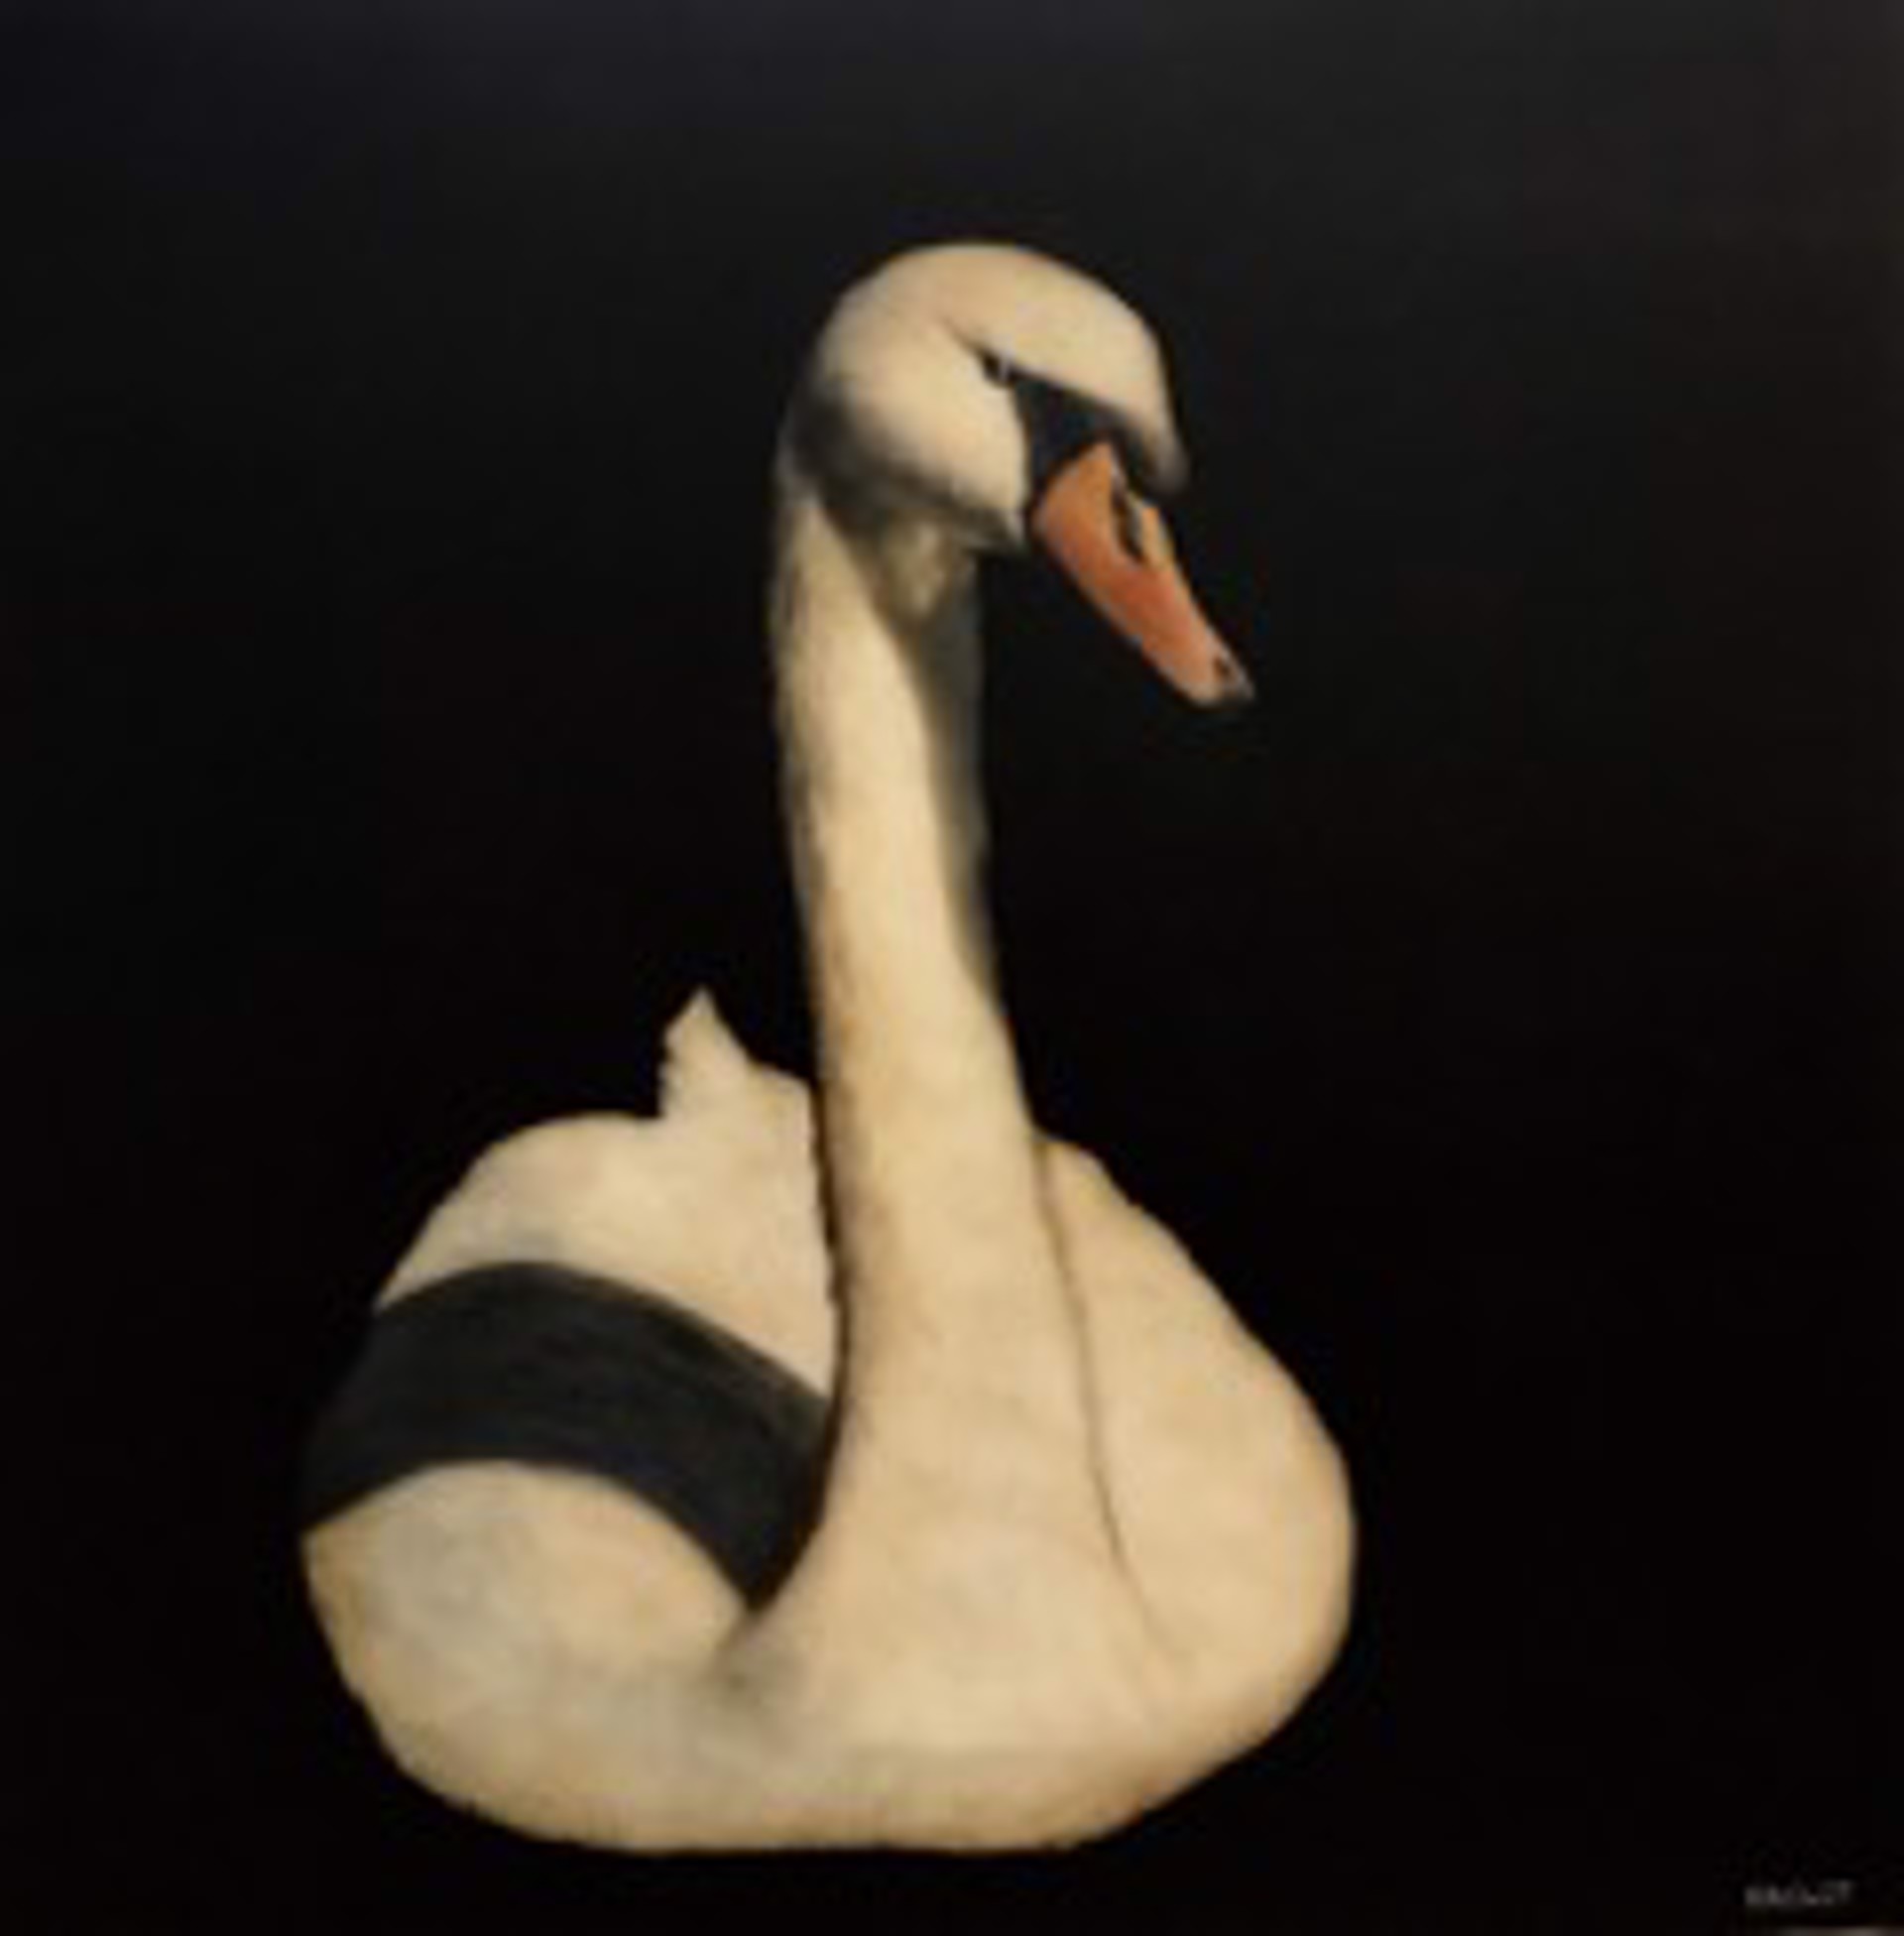 Swan Song by Dawne Raulet